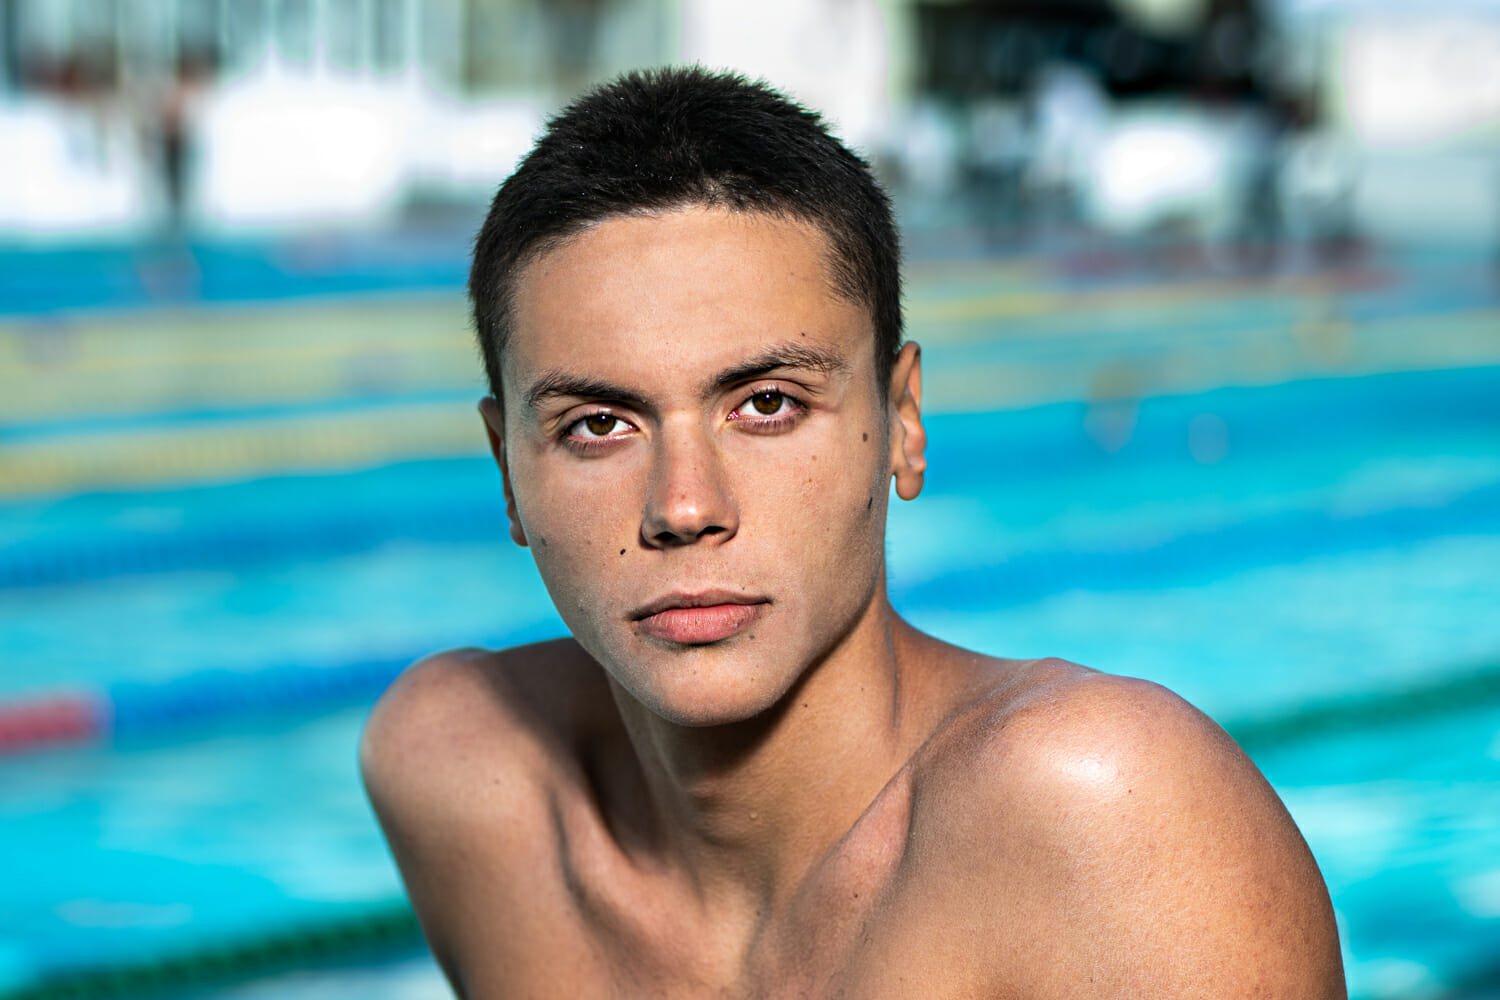 România are încă un campion! David Popovici a devenit primul campion mondial la natație din istorie